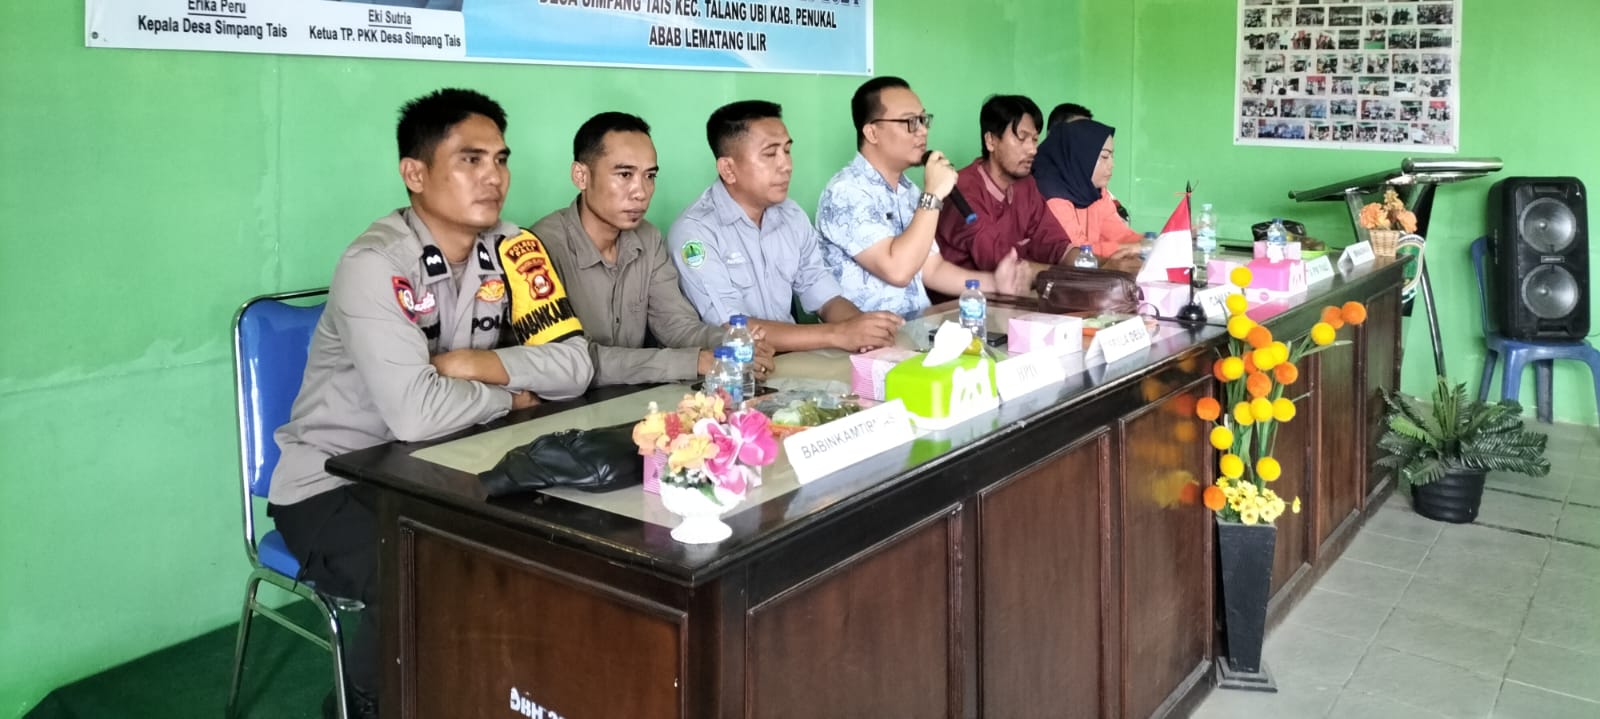 Polsek Talang Ubi Gelar Jum'at Curhat di Desa Simpang Tais